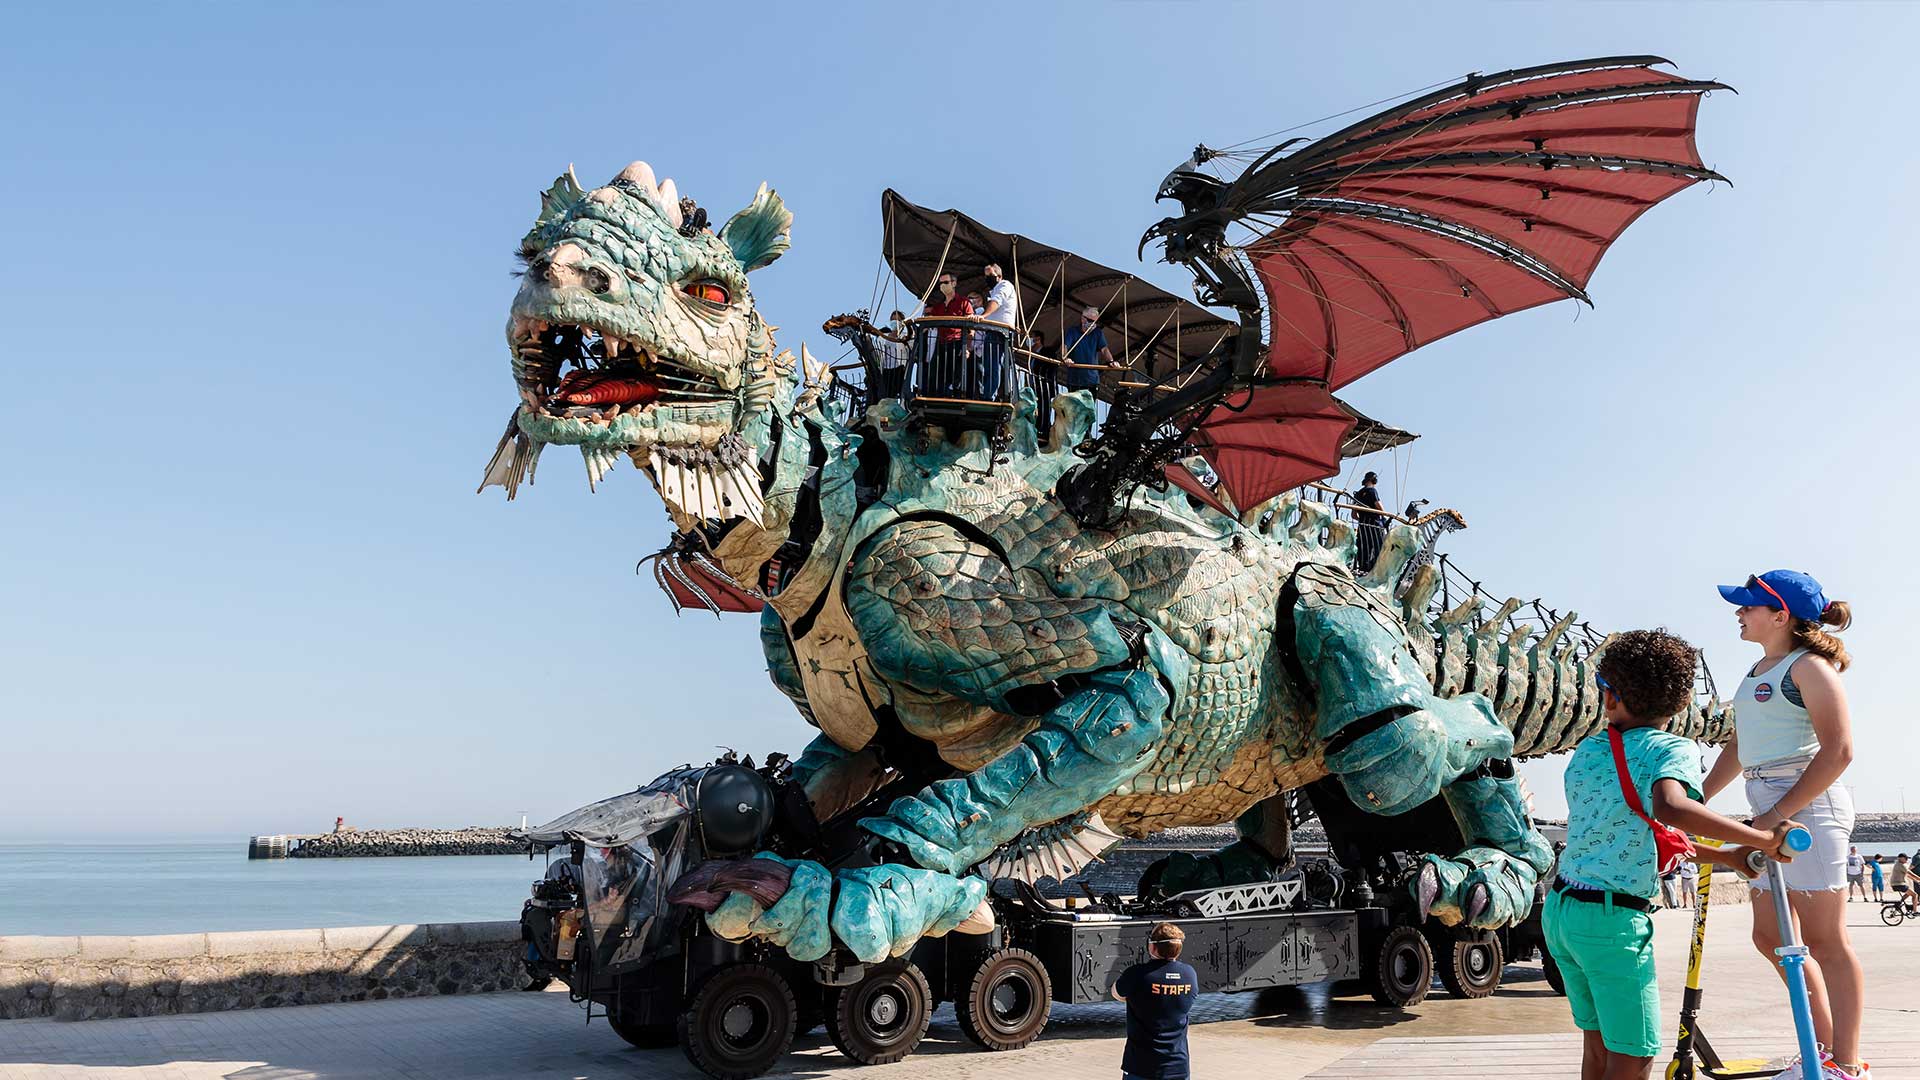 Le Dragon de Calais en voyage sur la Digue Gaston Berthe et en lisière de port